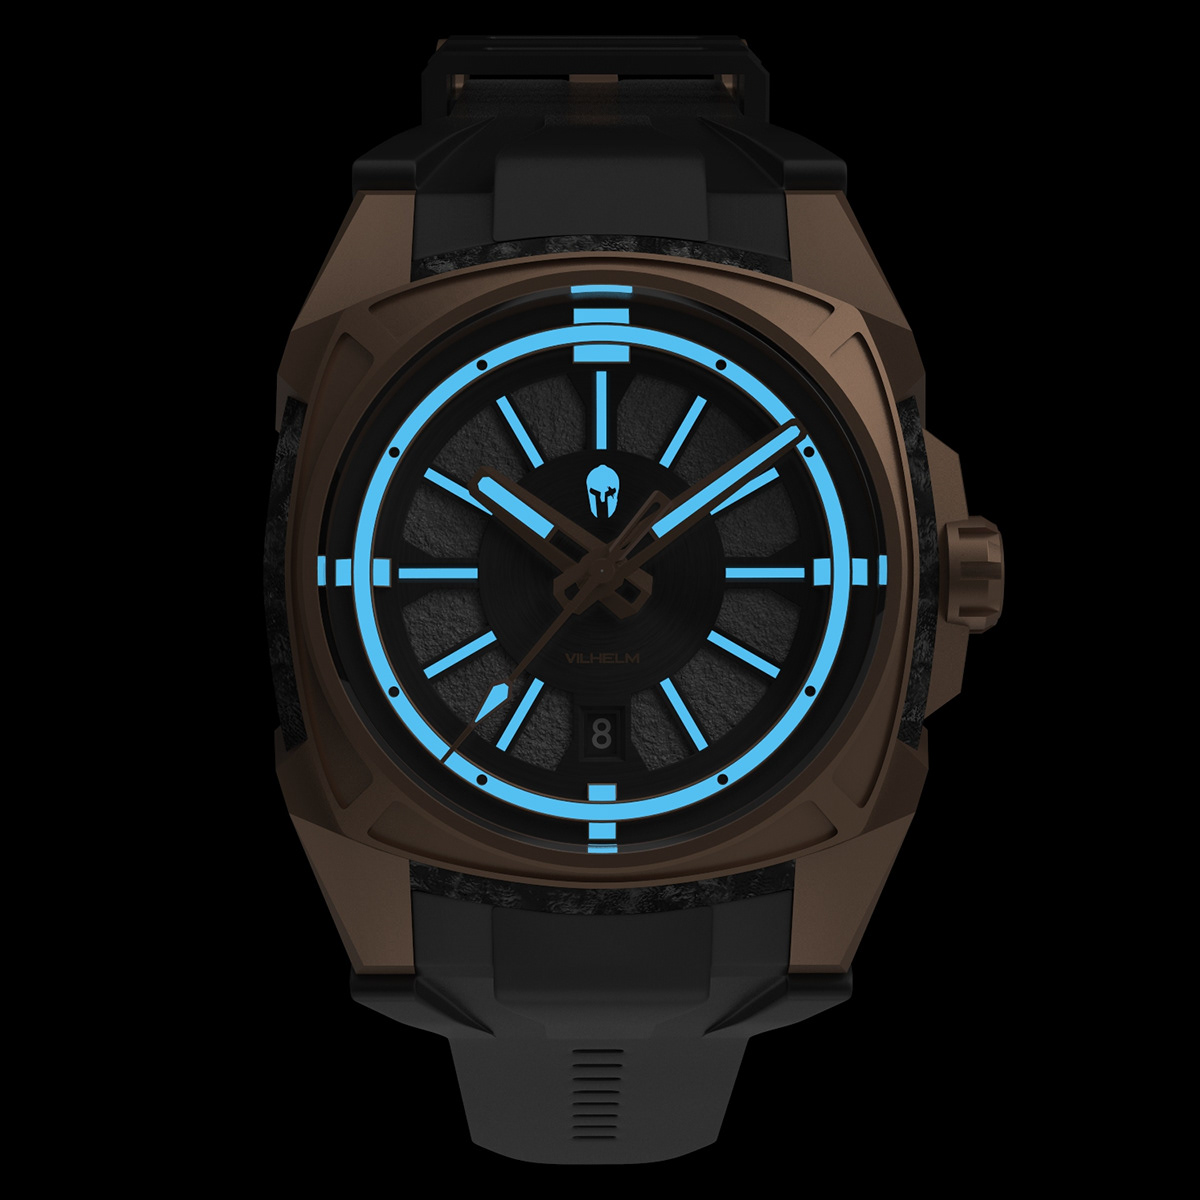 Watches diverwatch bronzewatch watch wristwatch Microbrand vilhelm design